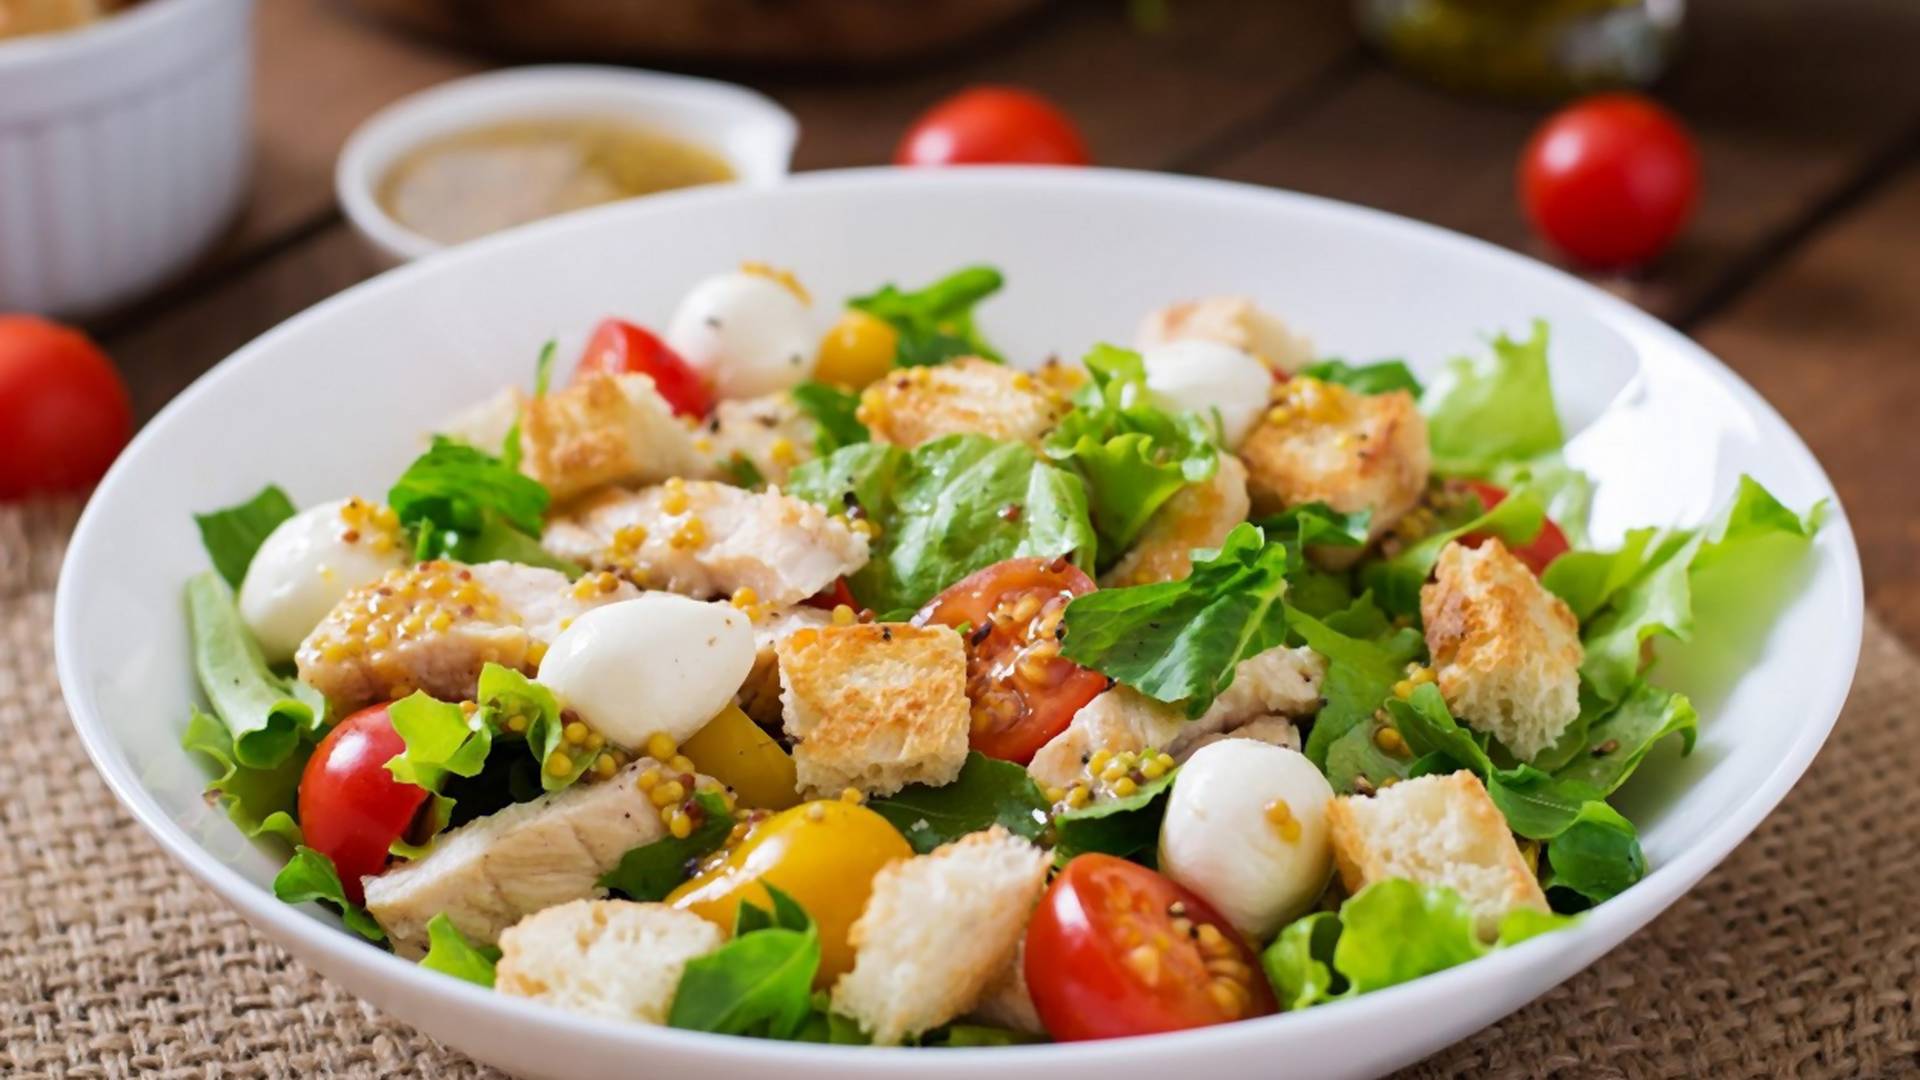 Originalna Cezar salata se ne pravi od sastojaka koje danas stavljamo